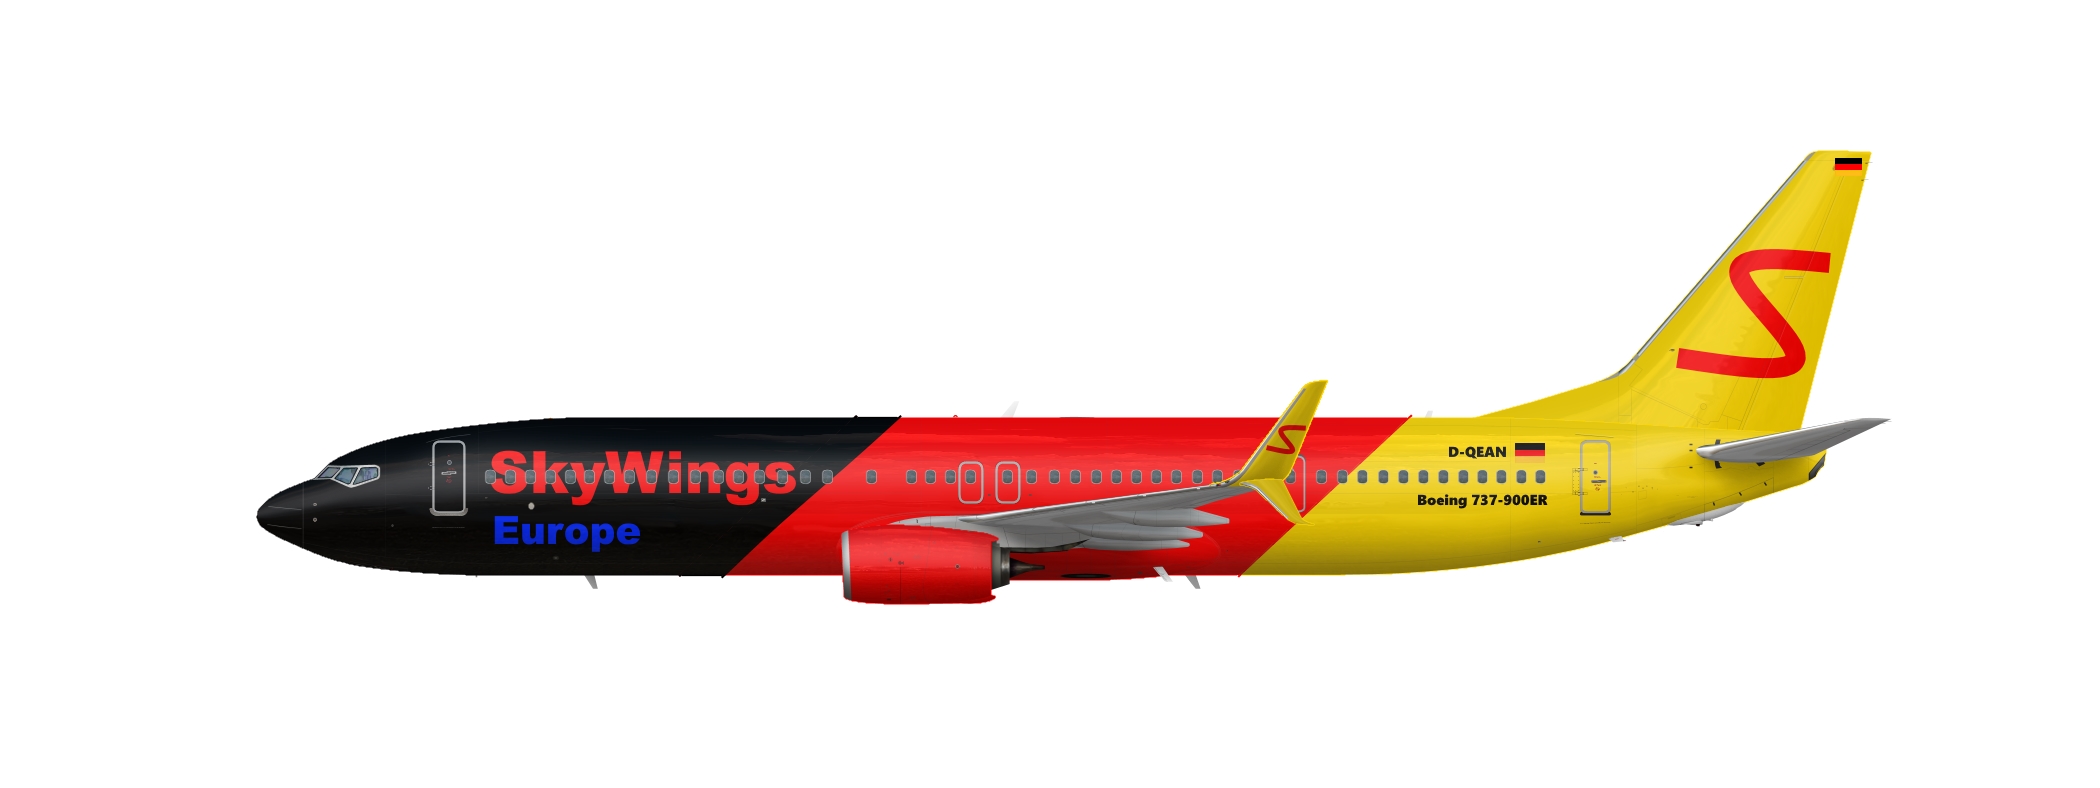 SkyWings Europe - Boeing 737-900ER - Deutschland.jpg